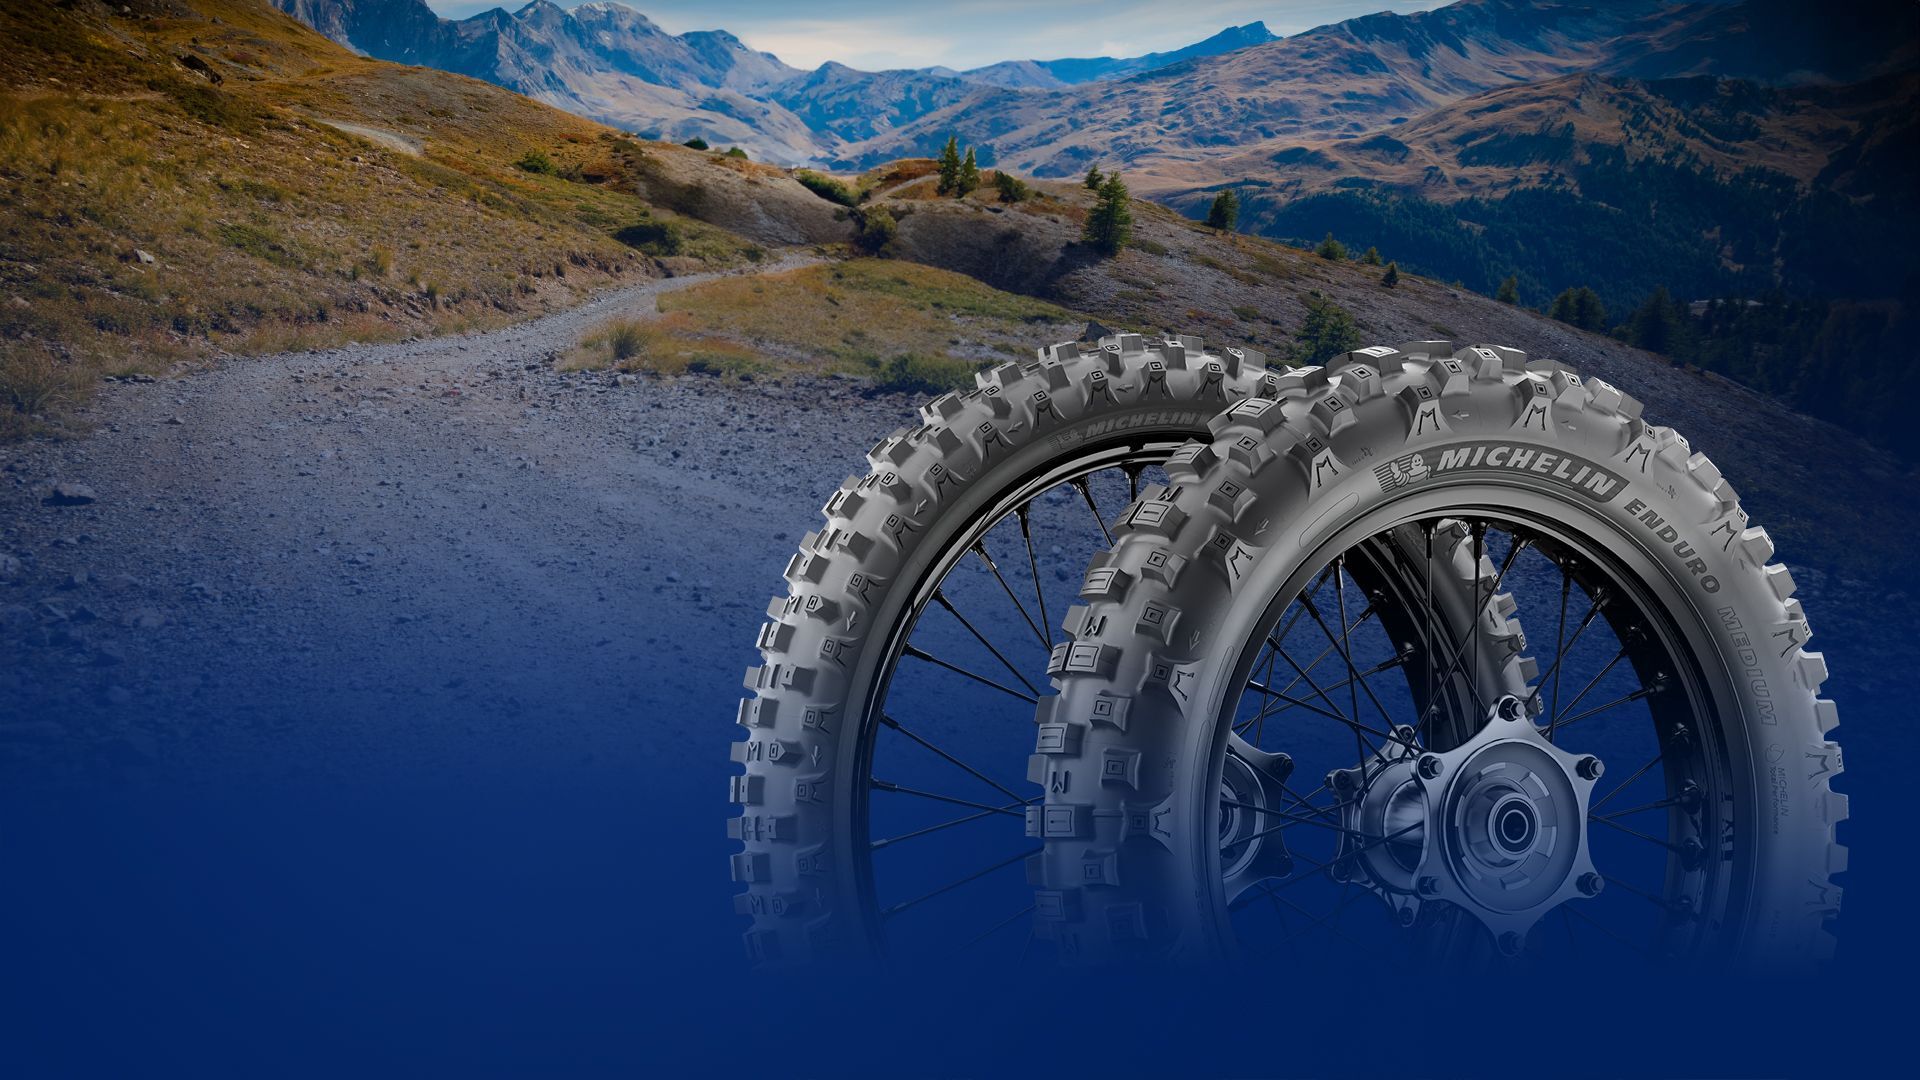 Neumáticos Michelin Enduro para motocicletas, la mejor opción para las aventuras de conducción fuera de carretera.